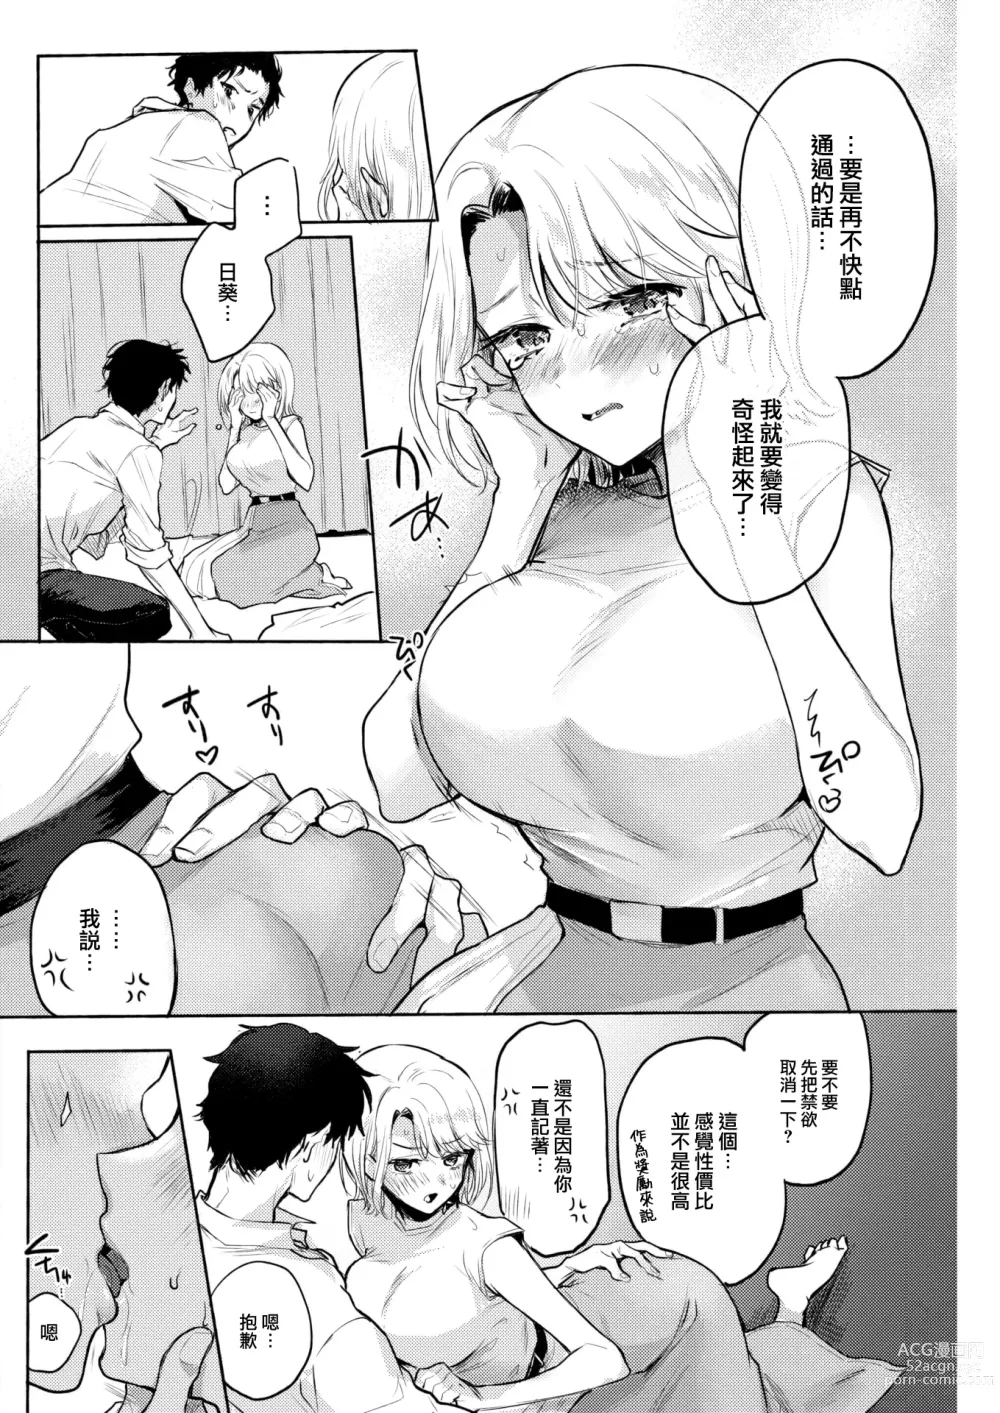 Page 15 of manga ] Shuukatsu Bonus Challenge!